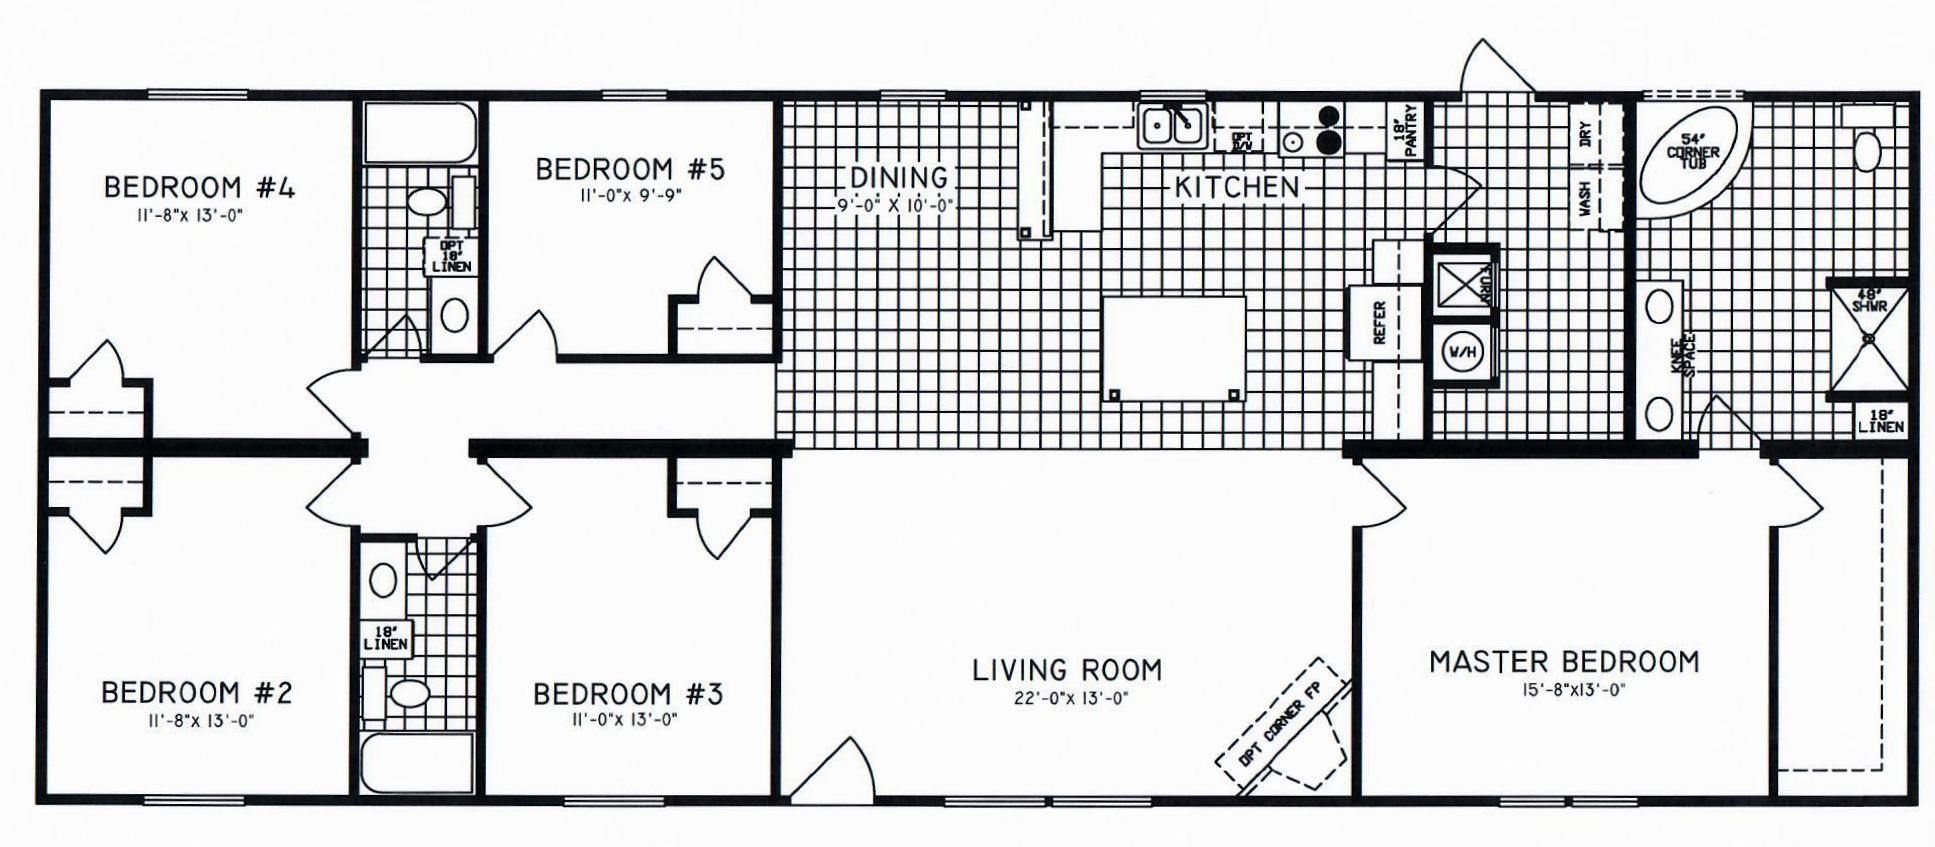 5 Bedroom Floor Plan C8108 Hawks Homes Manufactured